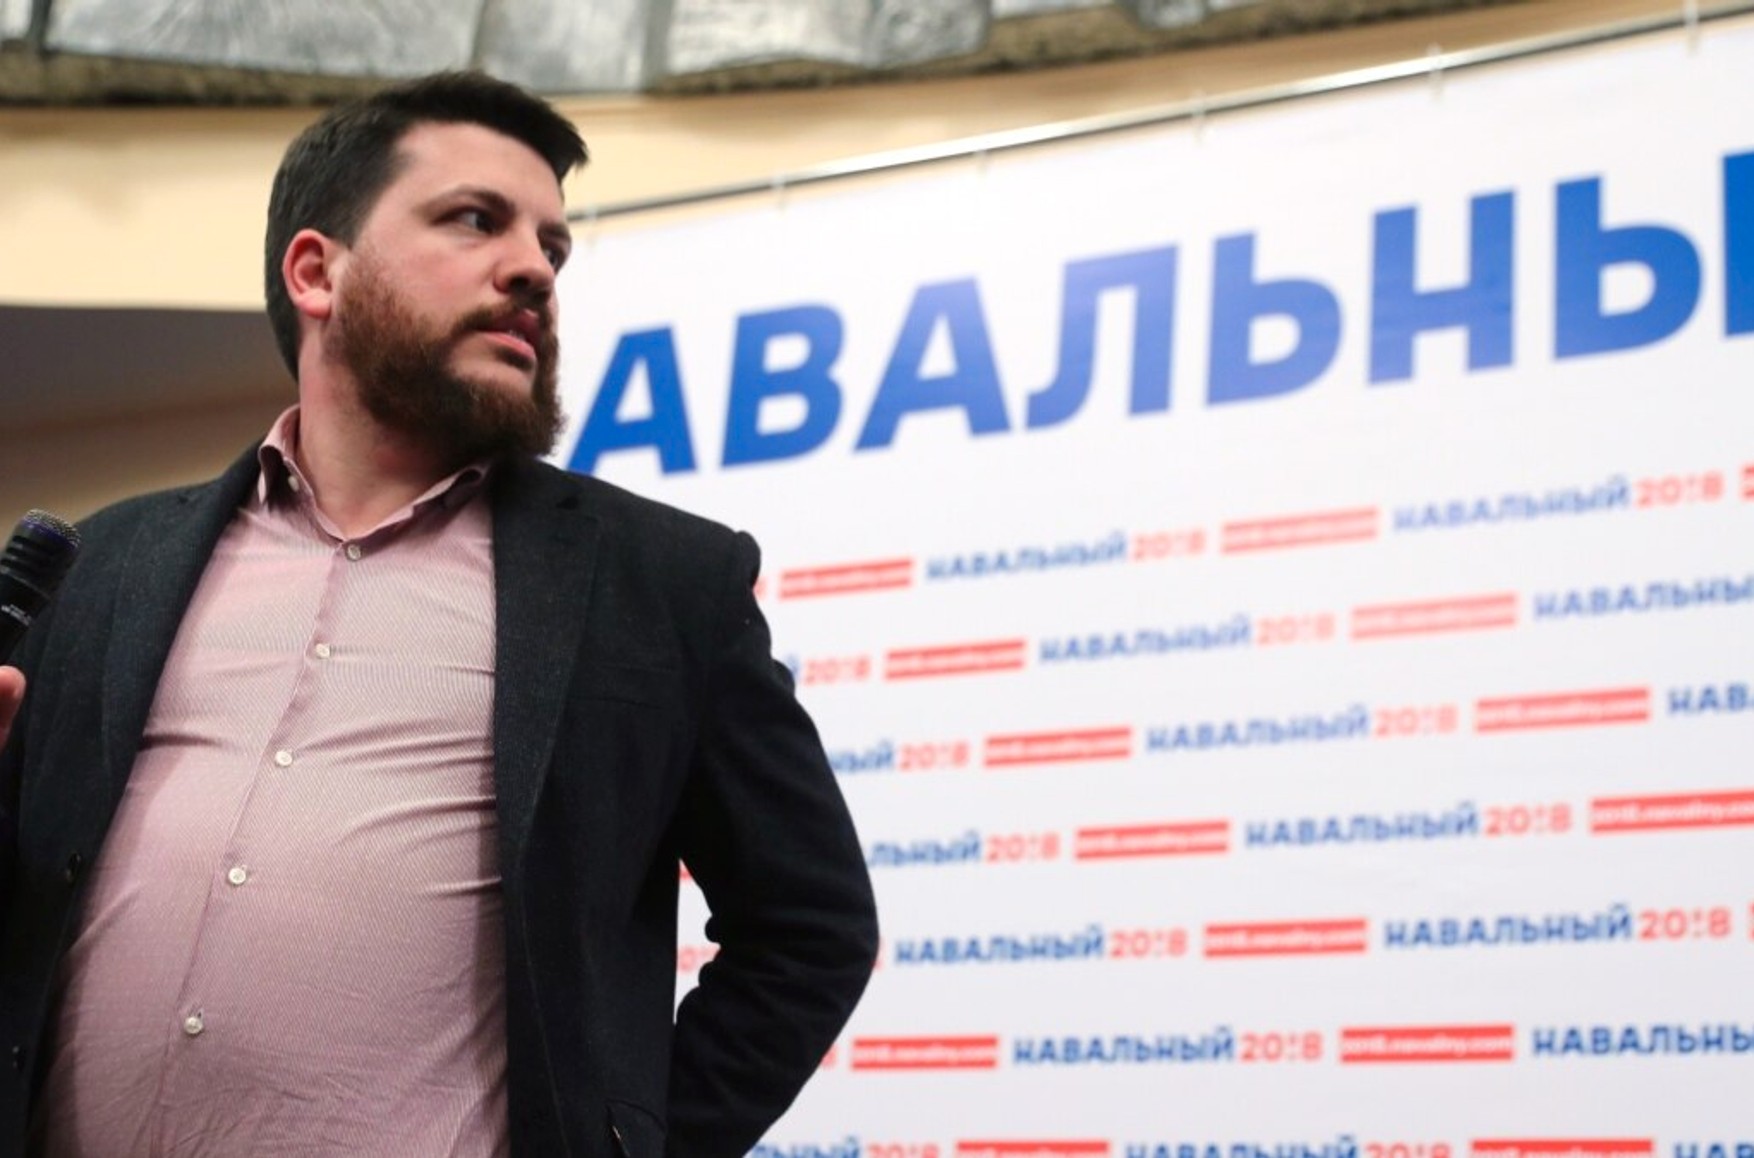 Соратники Навального составили список из 6 тысяч «коррупционеров и разжигателей войны»